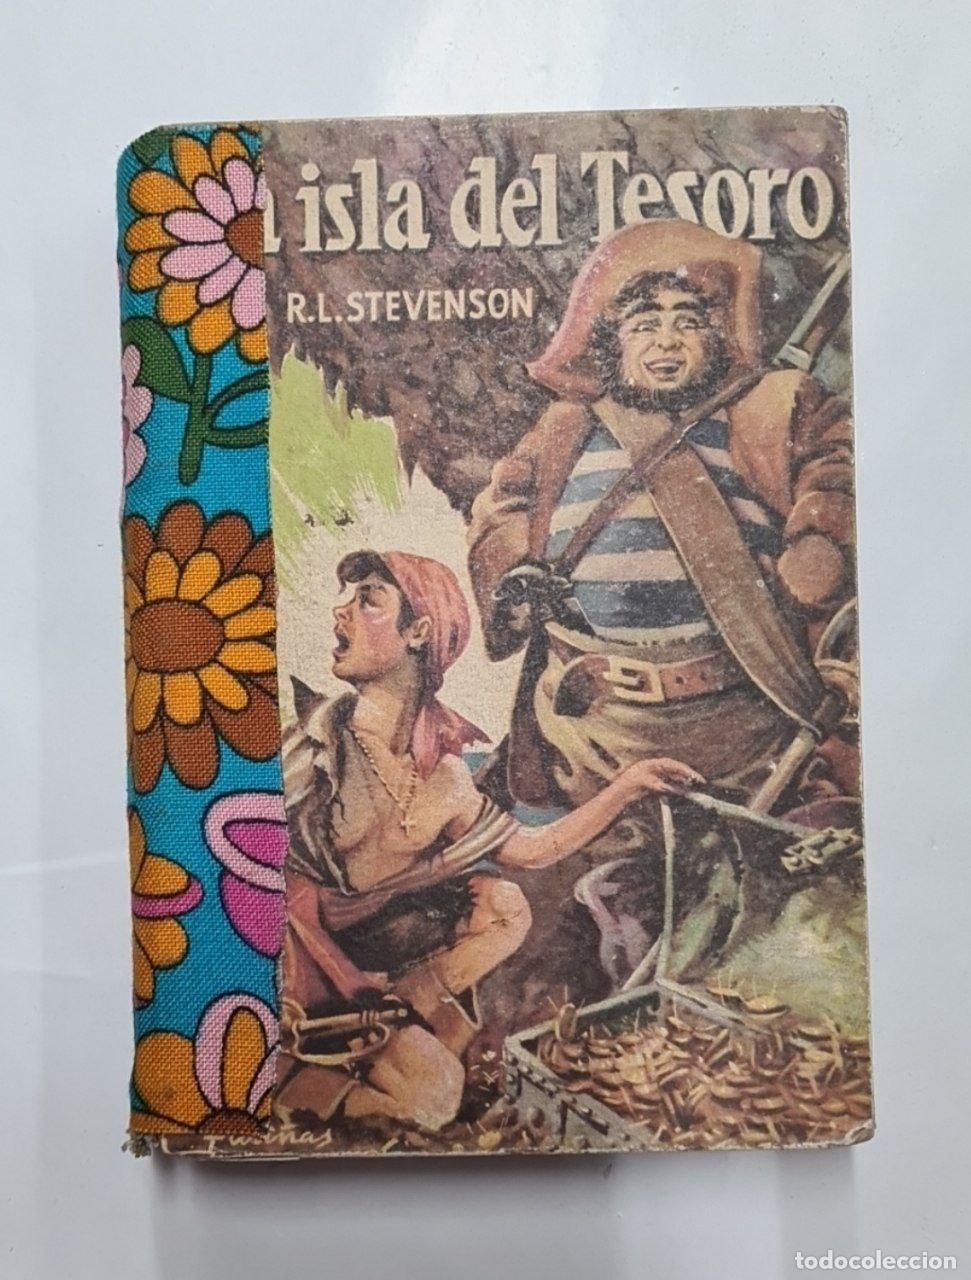 La isla del tesoro (Spanish Edition): Stevenson, R. L., Ingpen